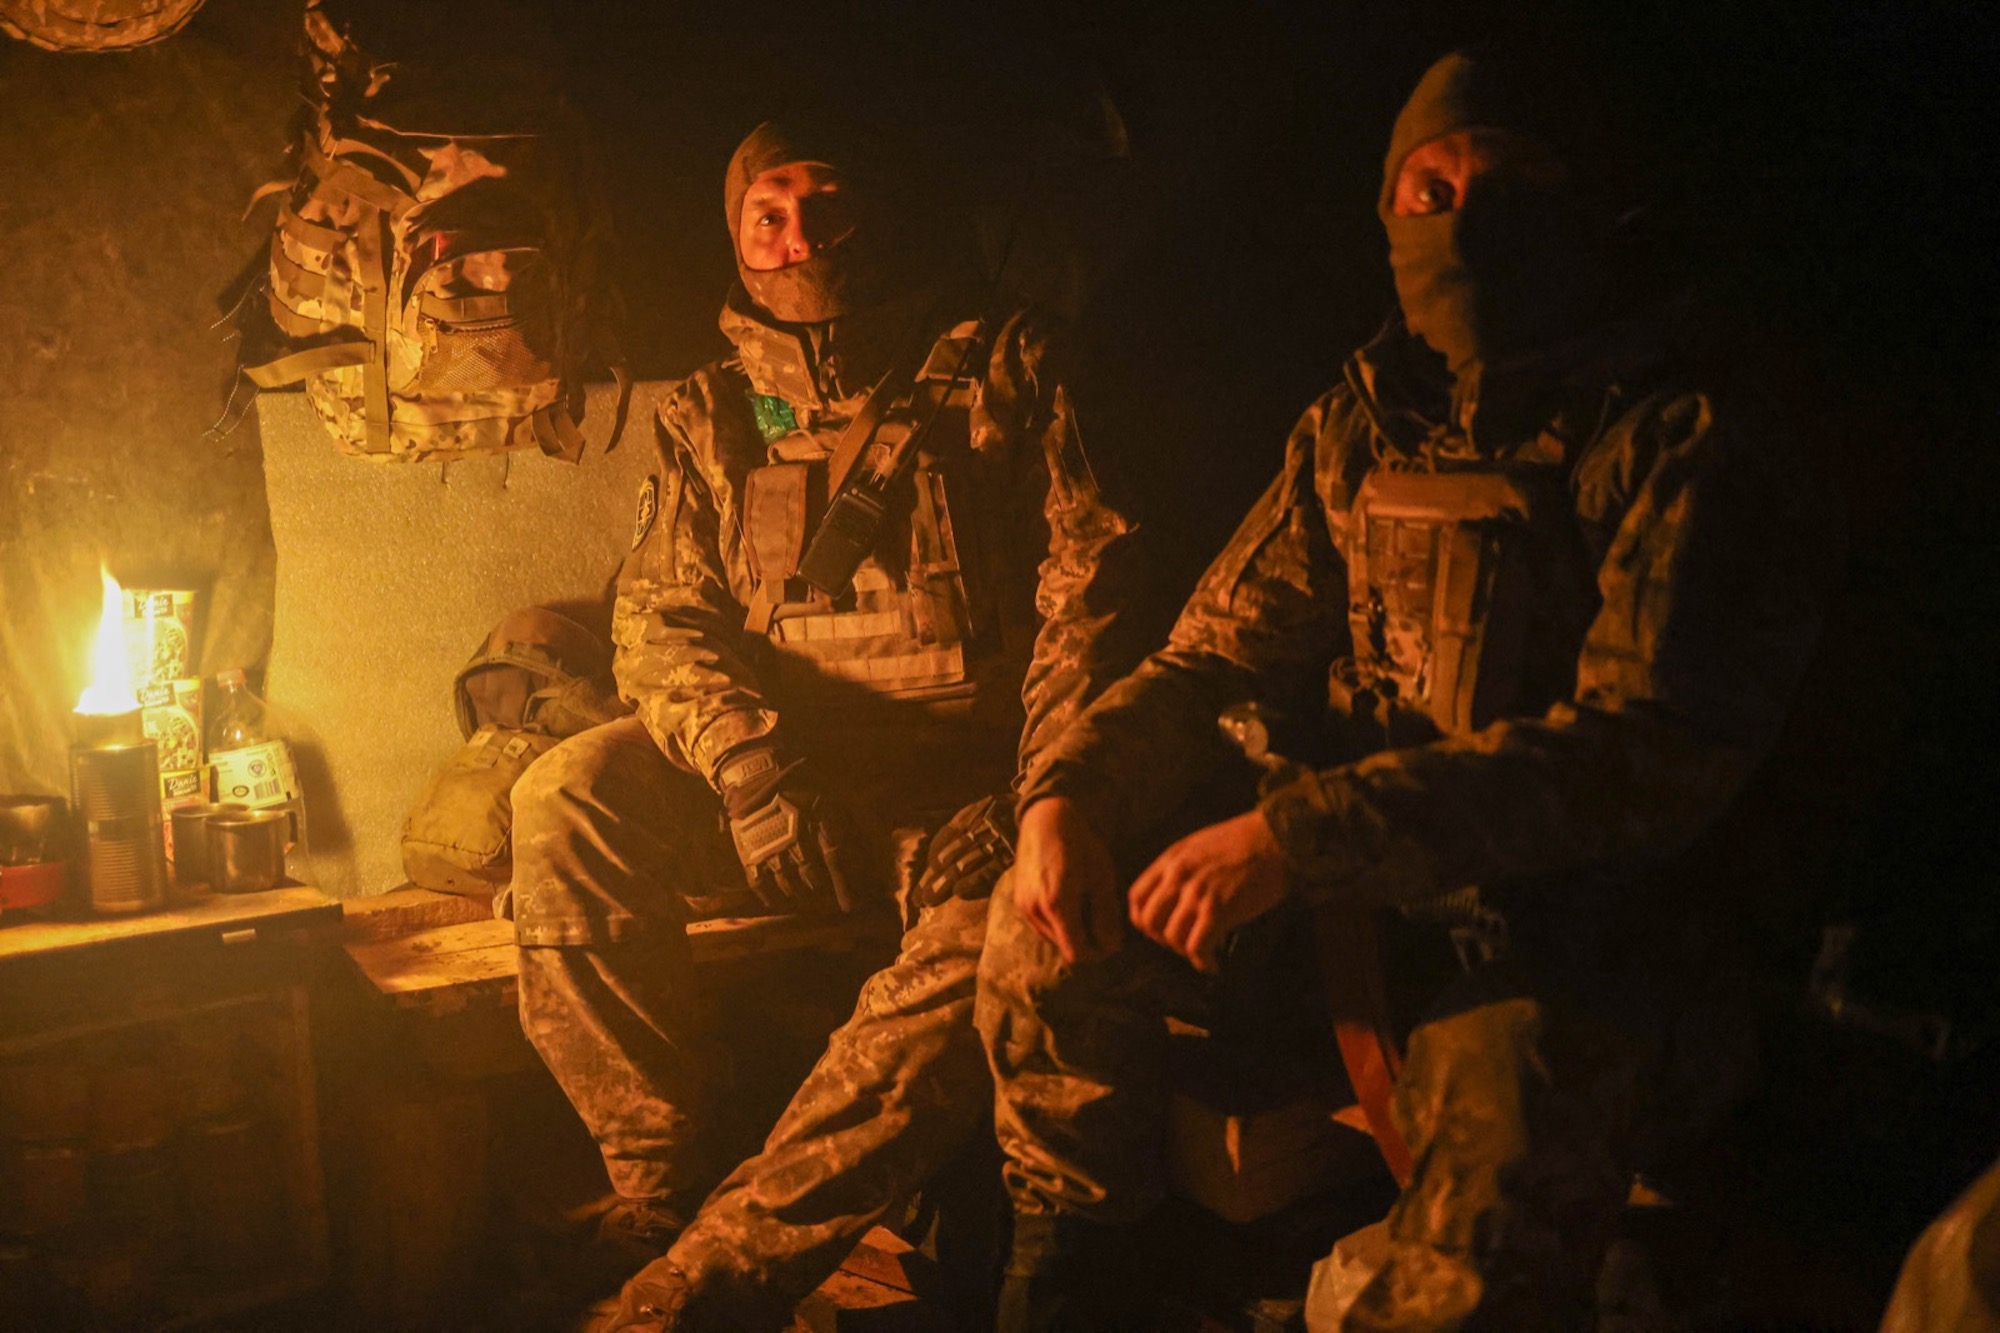 Pembaruan langsung: Perang Rusia di Ukraina